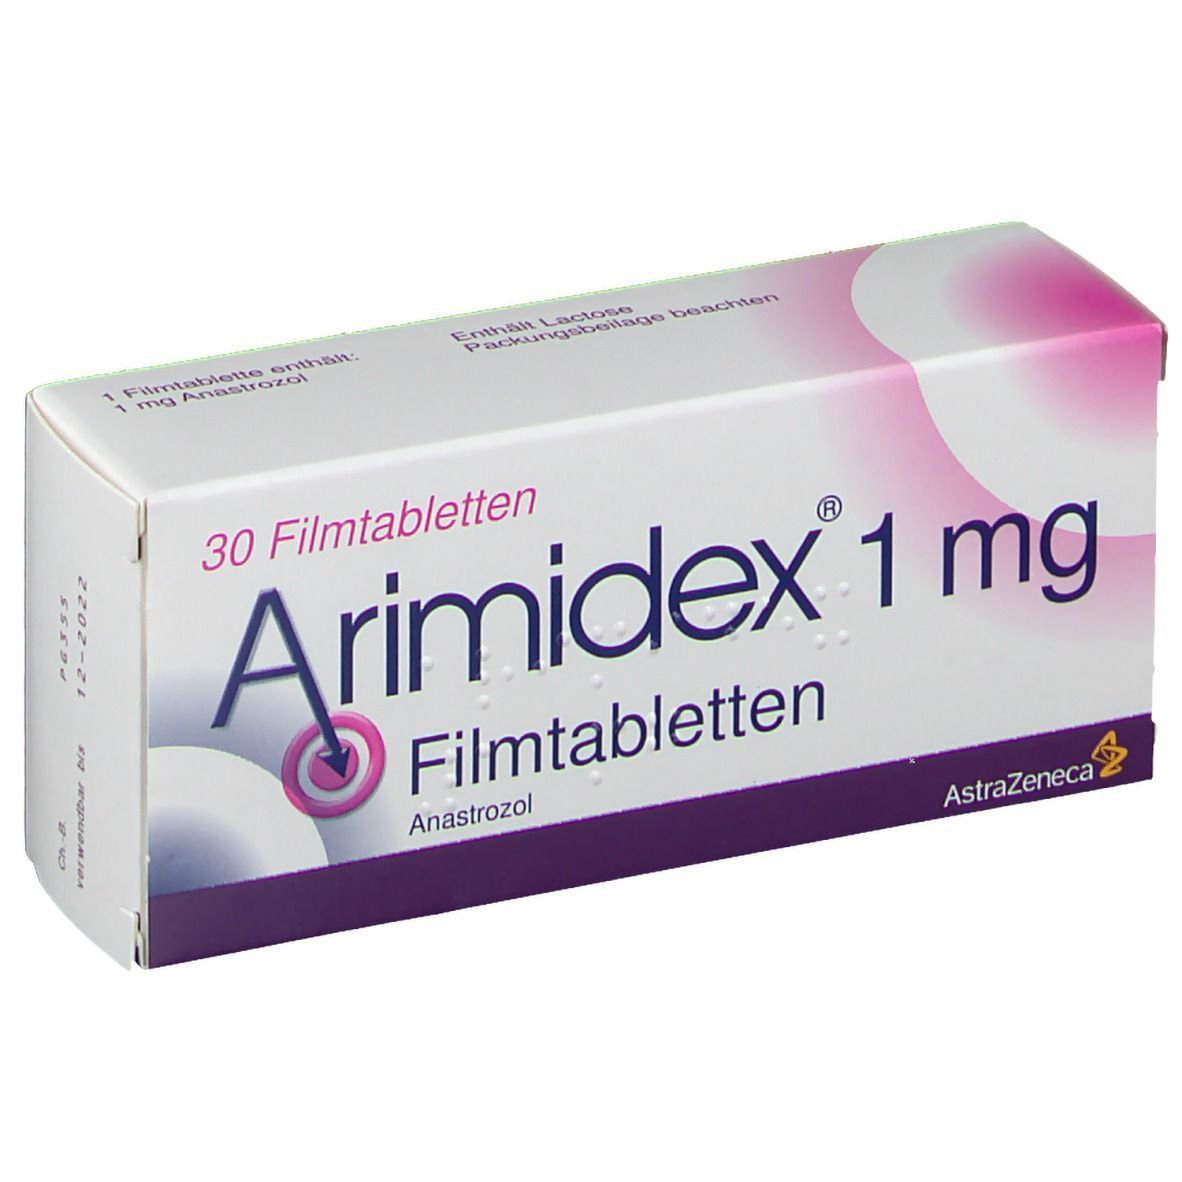 Thuốc Arimidex có tác dụng gì?